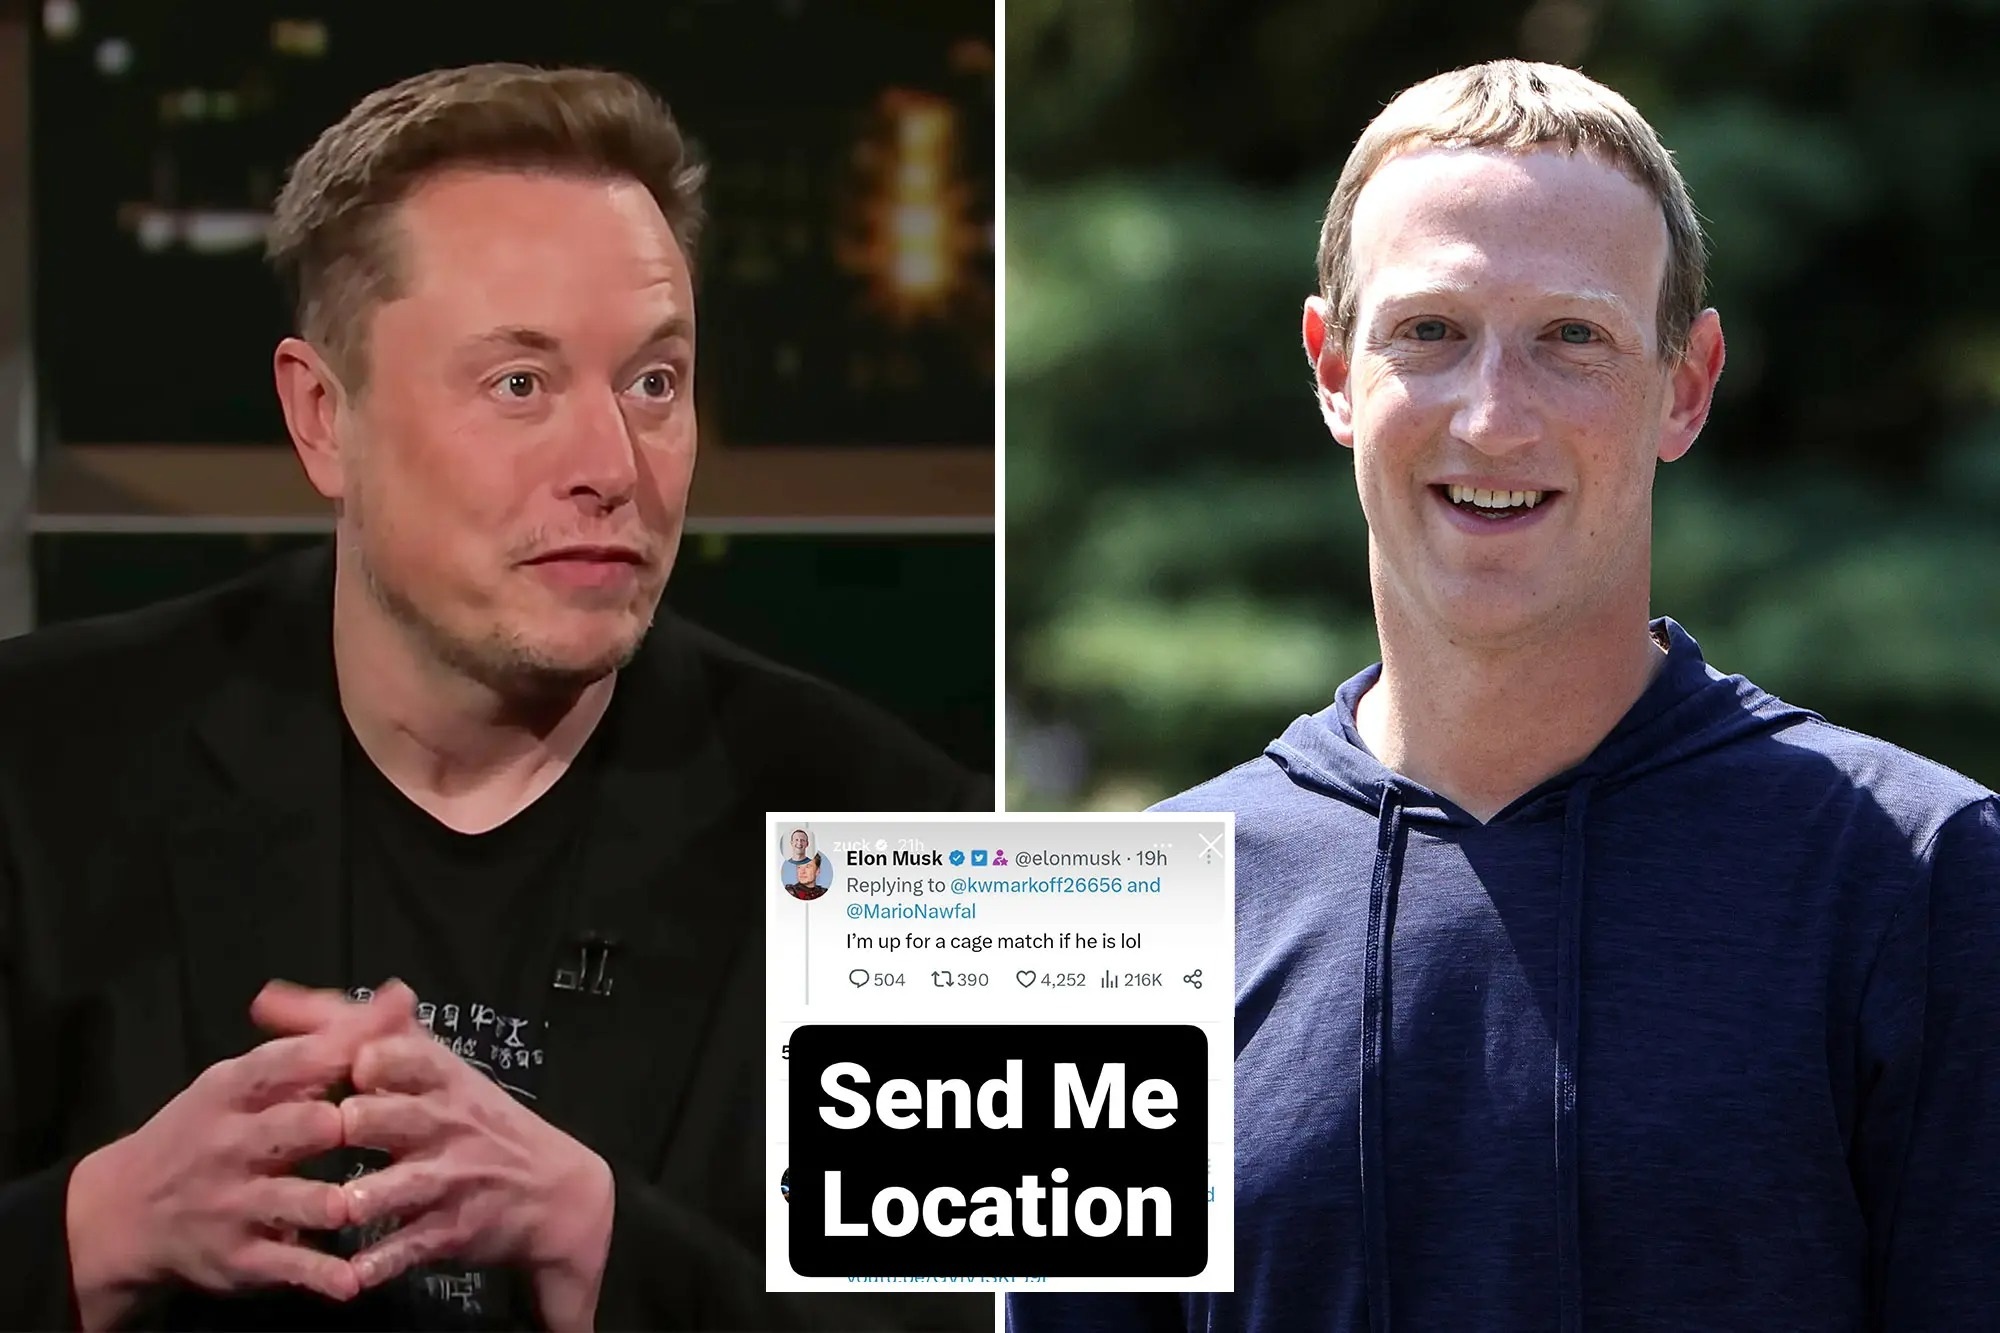 View - So kè năng lực thực chiến của Elon Musk và Mark Zuckerberg khi so găng | Báo Dân trí